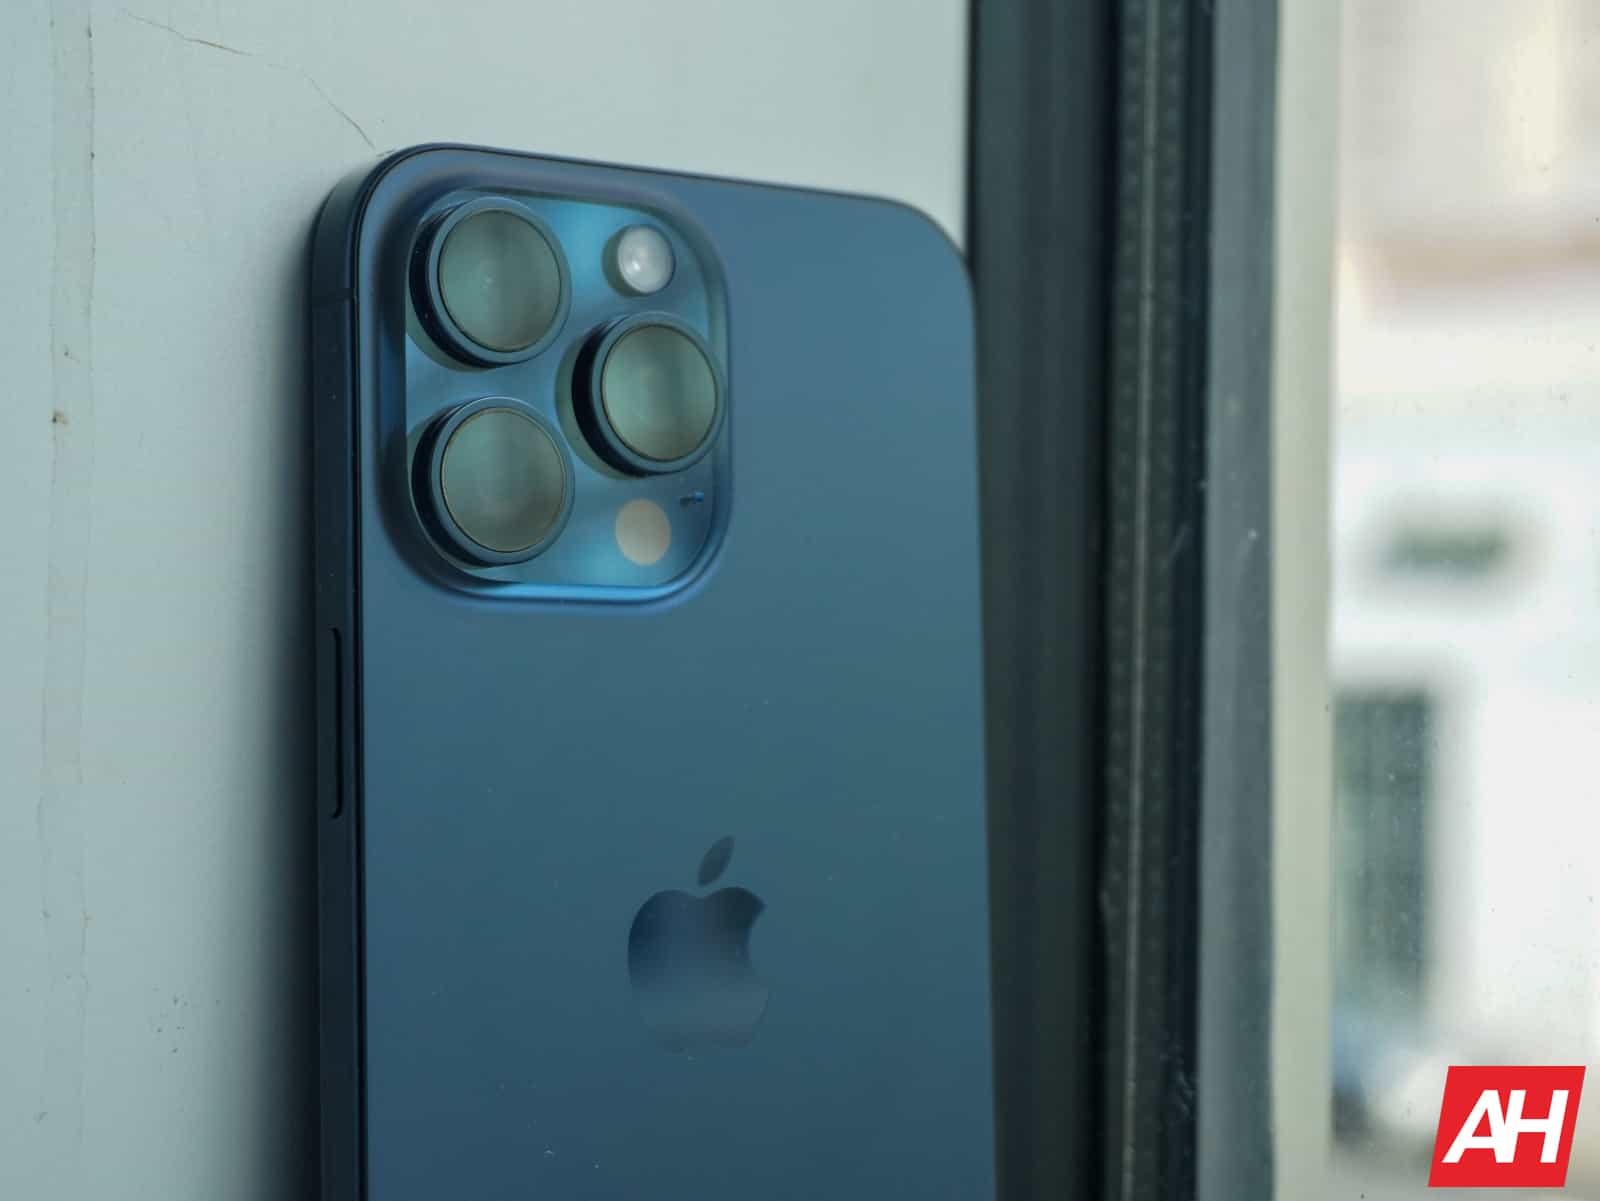 Patente de Apple describe el mecanismo de bisagra para iPhones plegables